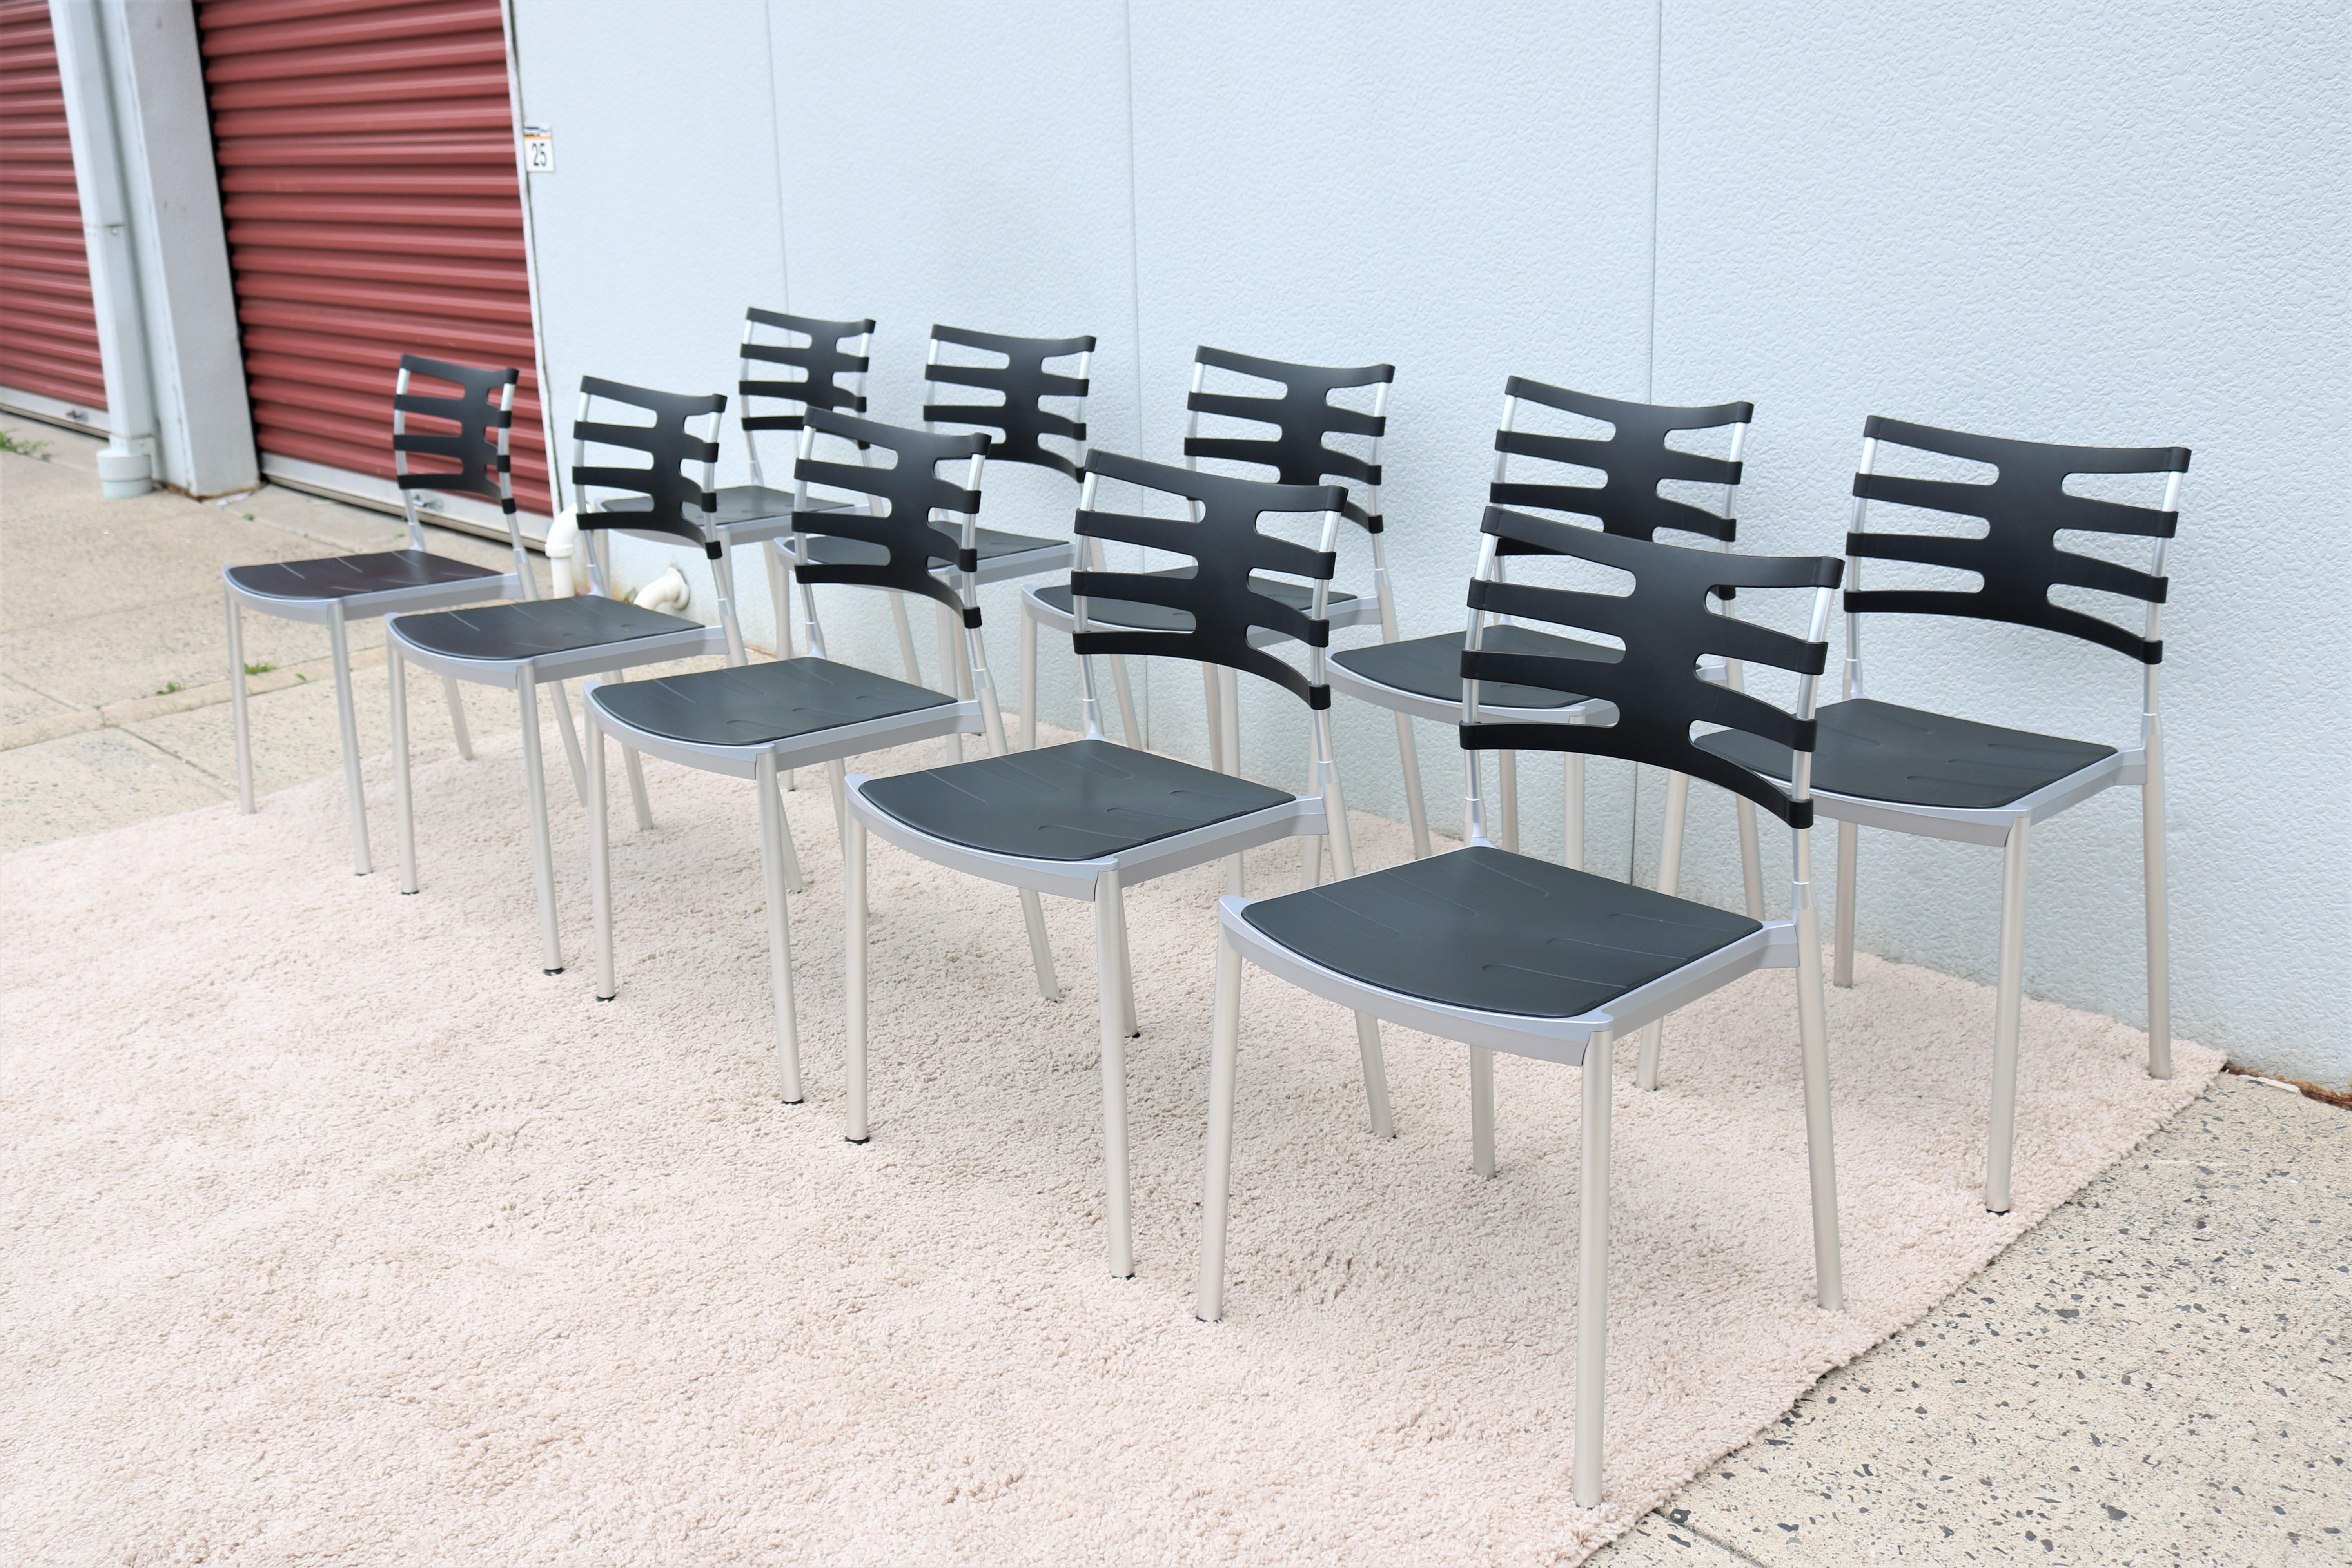 Ces chaises Ice, épurées et minimalistes, sont élégantes et fonctionnelles. Ice est la première chaise de Fritz Hansen qui convient aussi bien à un usage intérieur qu'extérieur.
Sa conception légère et sa fonction d'empilage en font la chaise